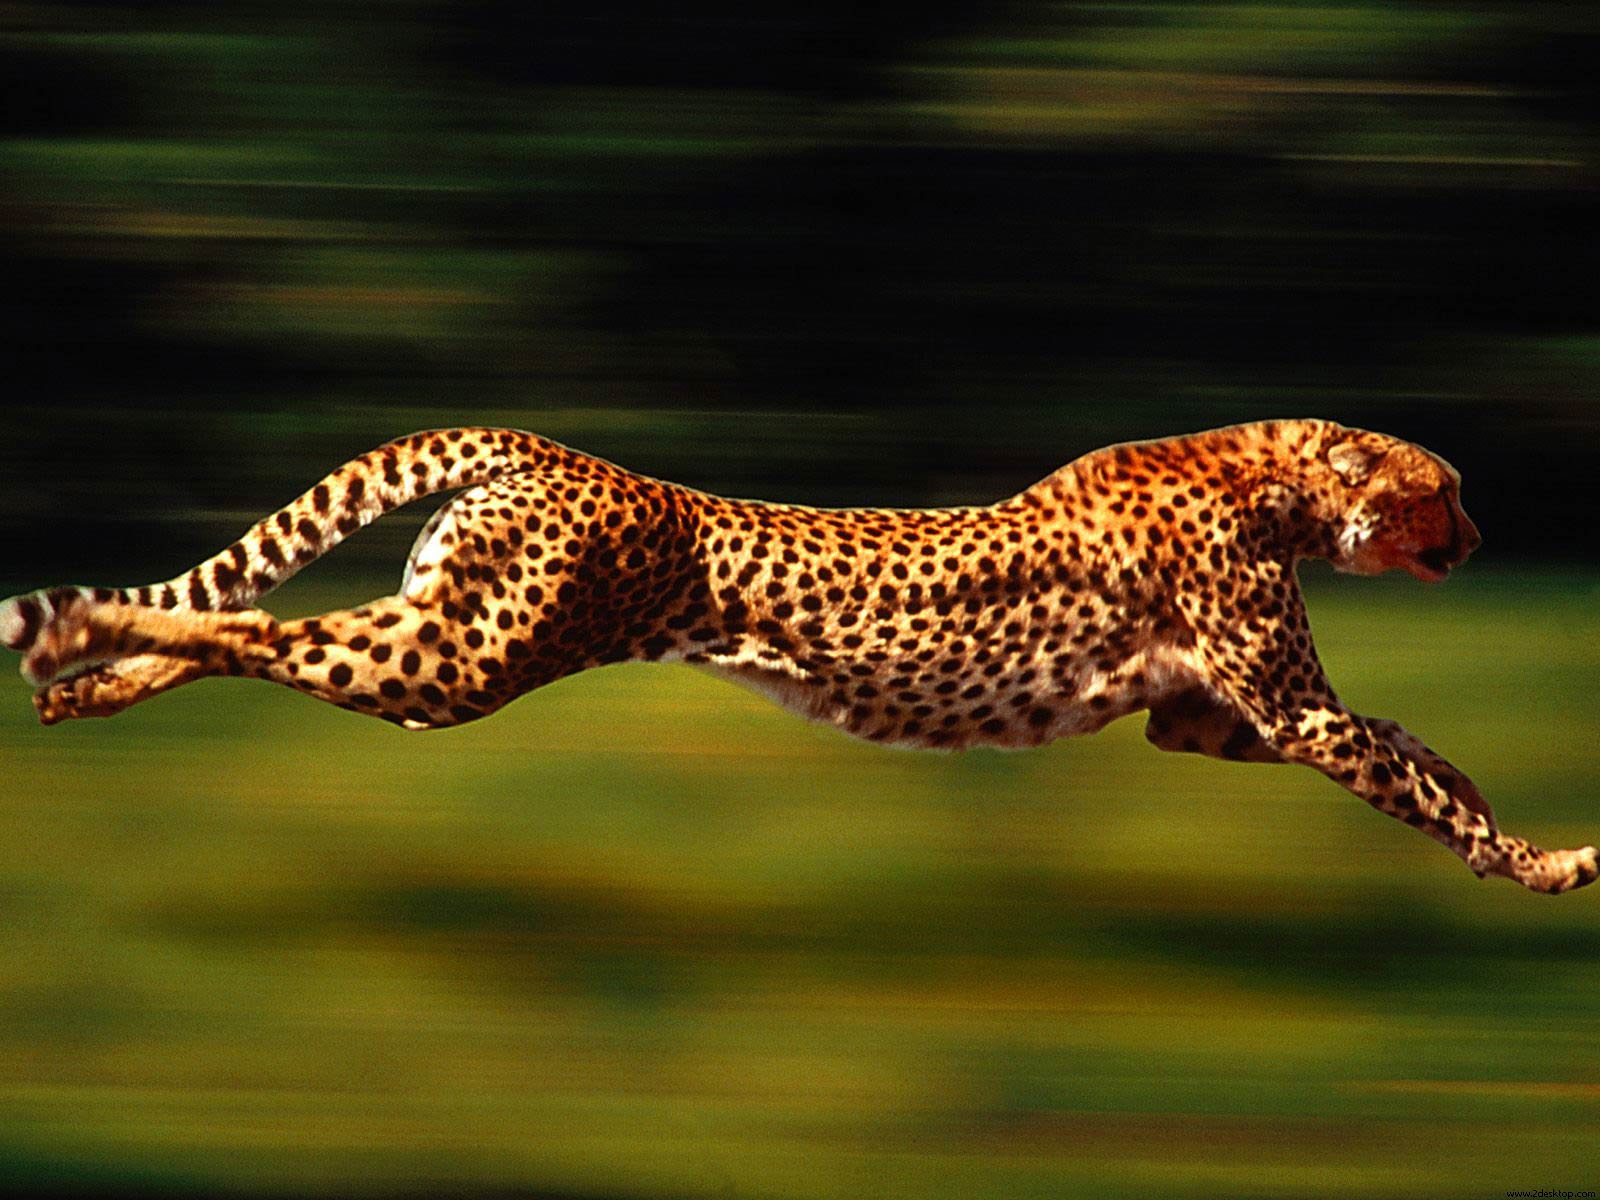 相比奔跑,花豹更善于爬树.多以伏击猎杀动物.